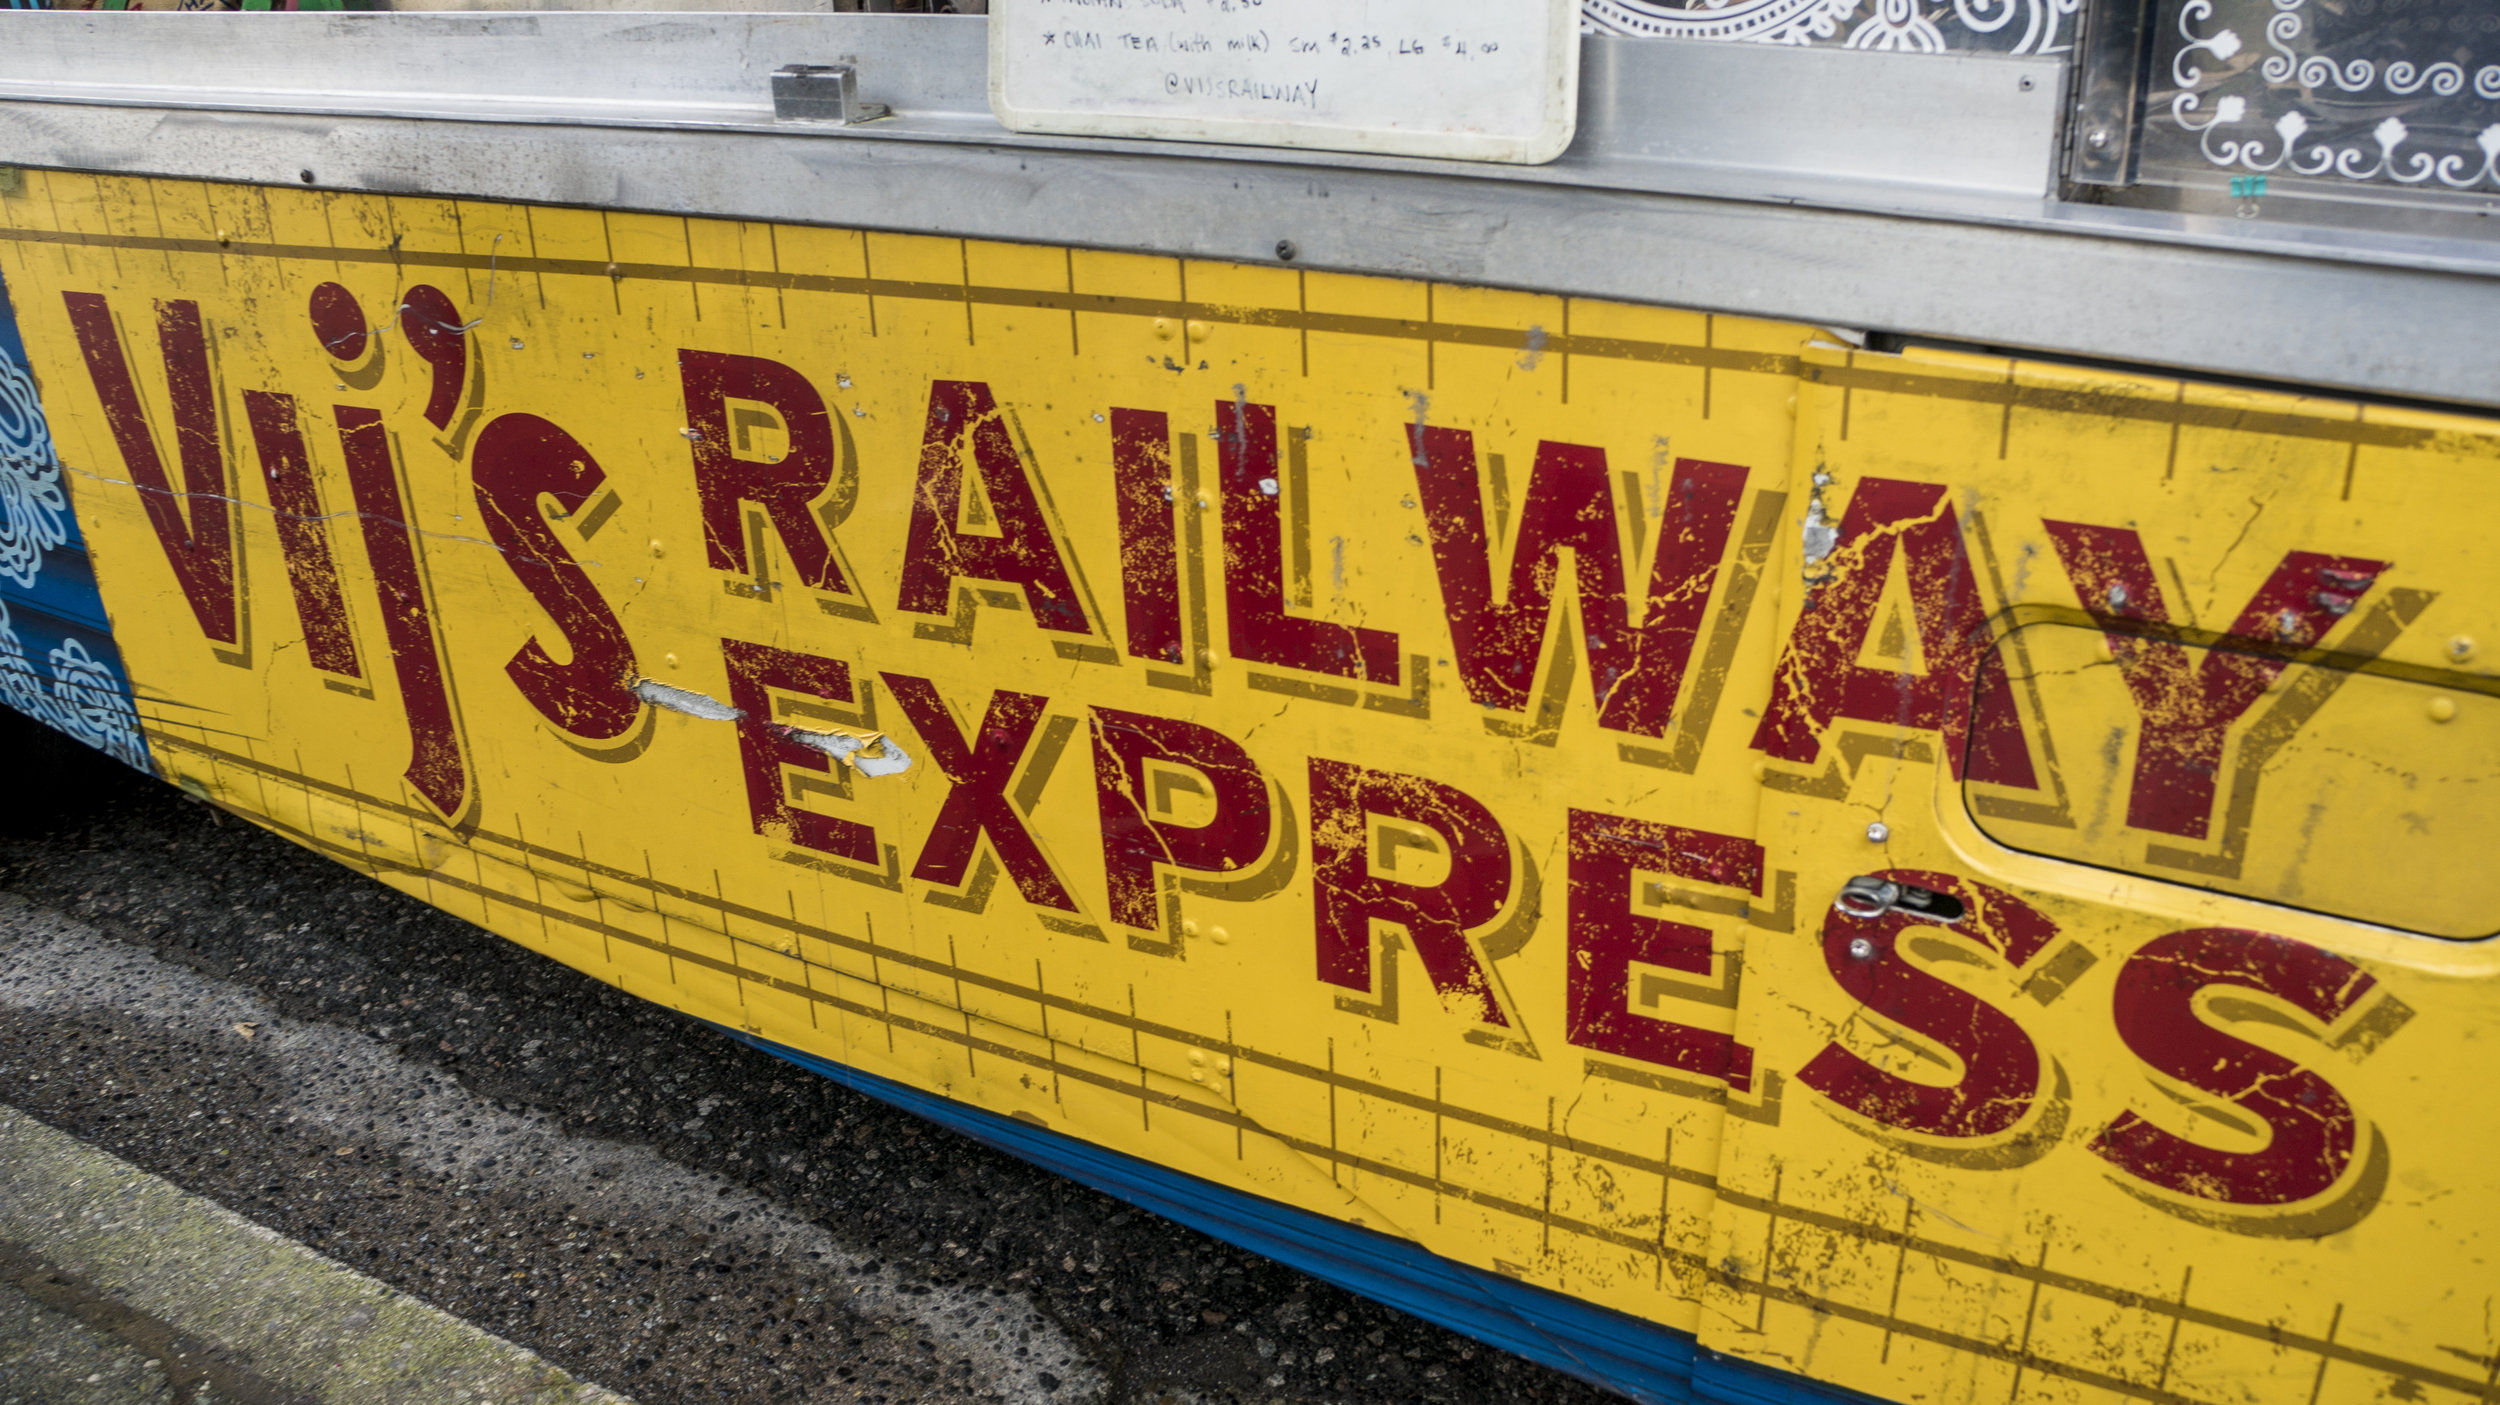 vijs_railway_express.final.1006.jpg